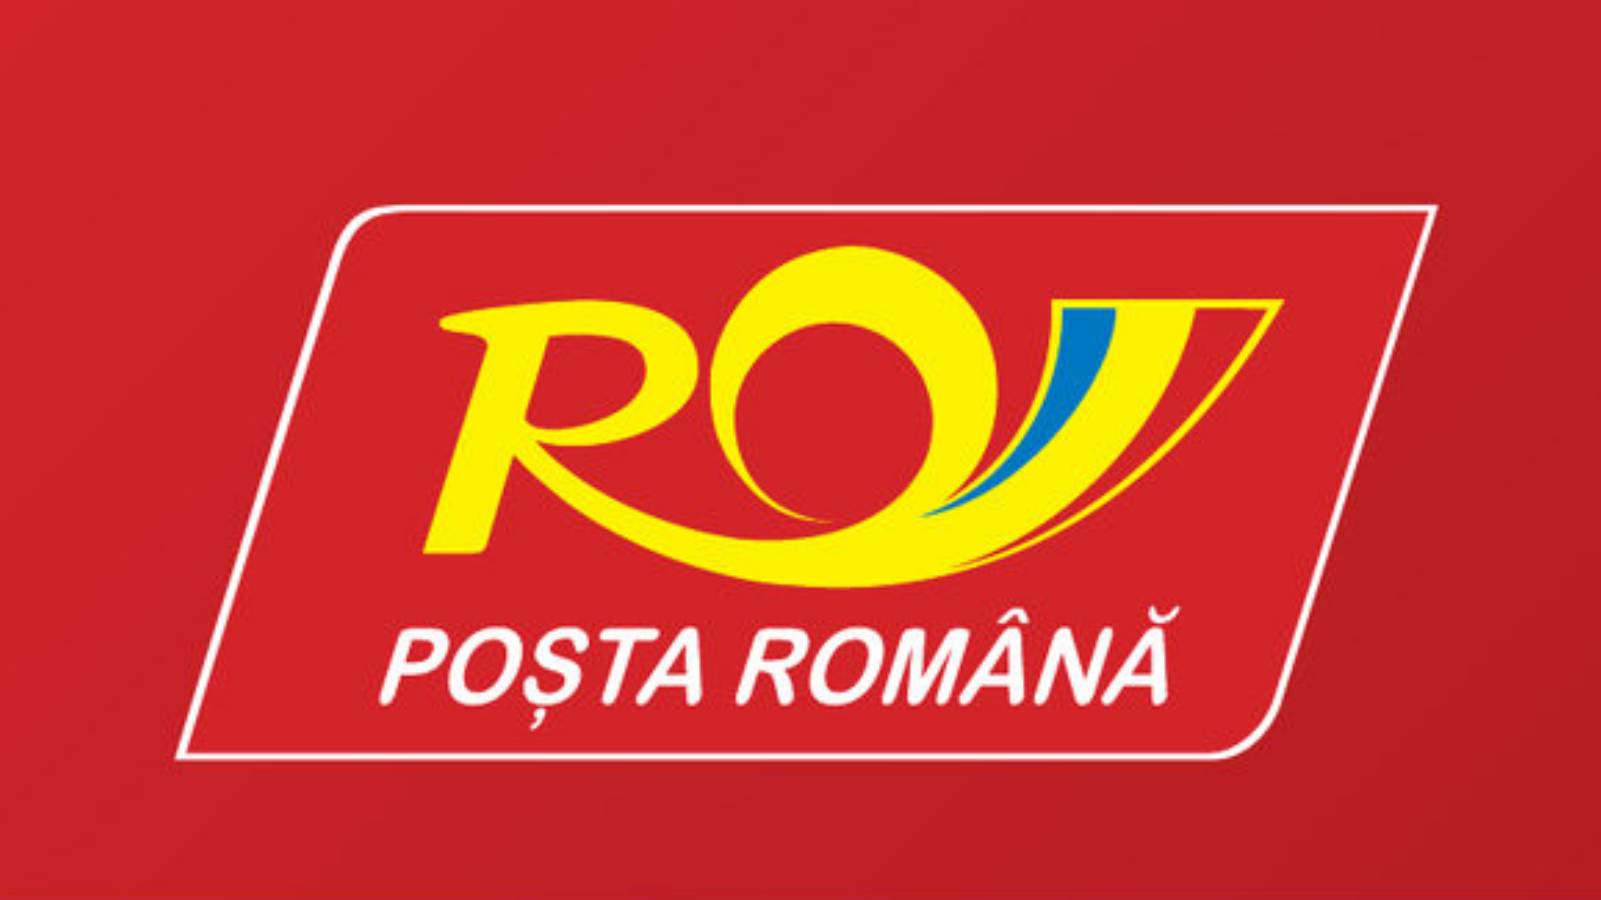 Postkantoor van het district Posta Romana